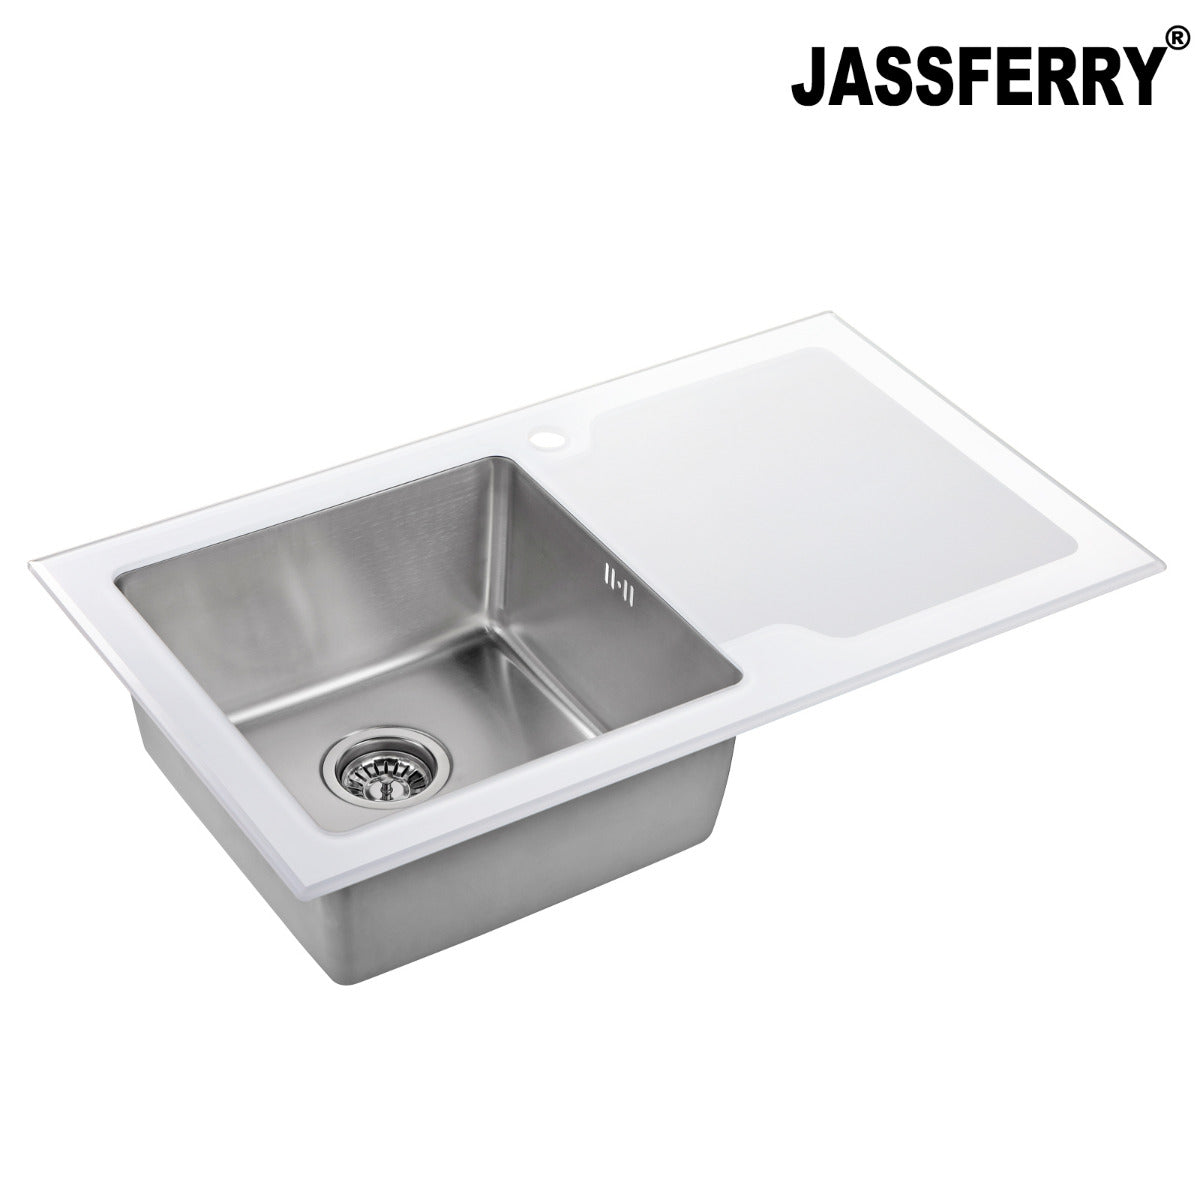 JassferryJASSFERRY White Glass Top Kitchen Sink 1 Stainless Steel Bowl Righthand DrainerKitchen Sinks